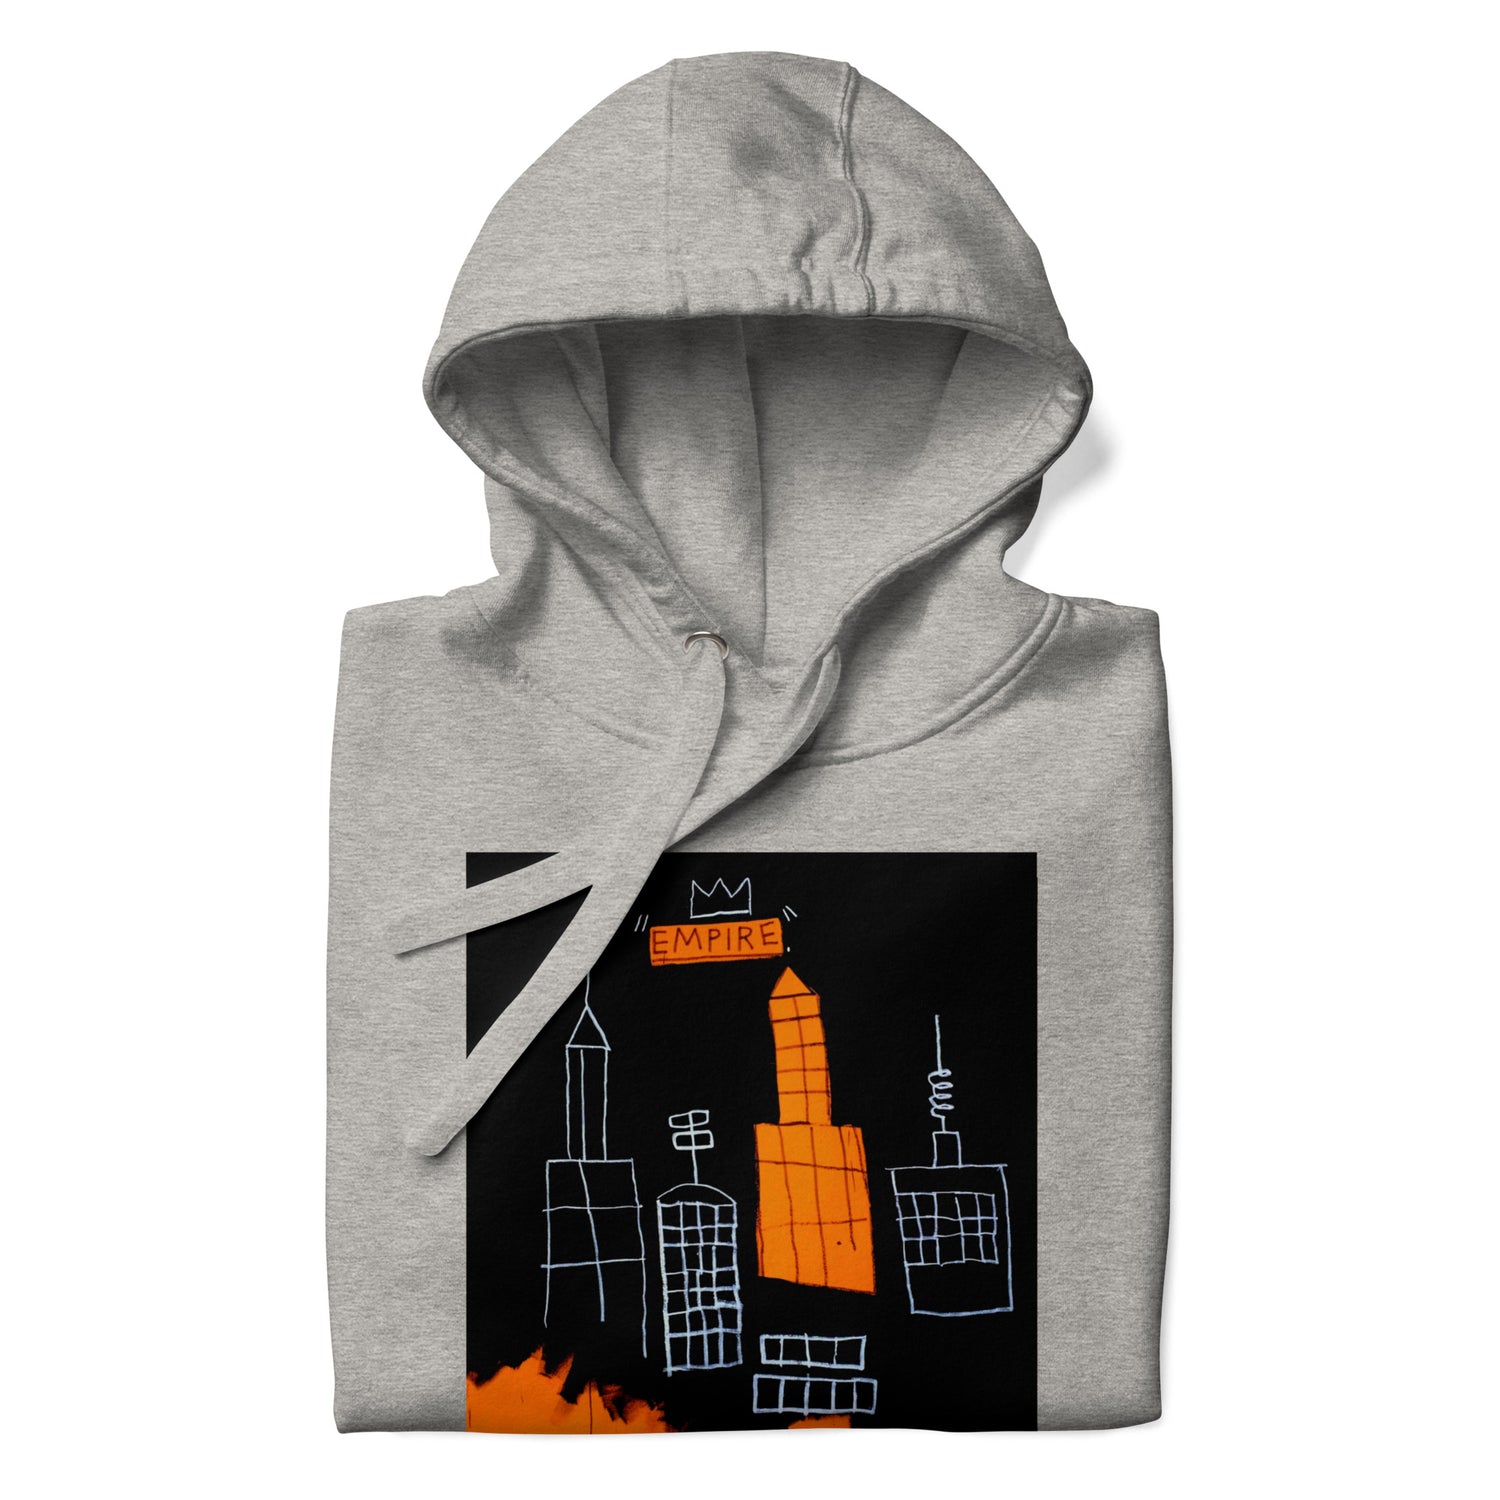 Jean-Michel Basquiat "Mecca" Artwork Printed Premium Streetwear Sweatshirt Hoodie Grey